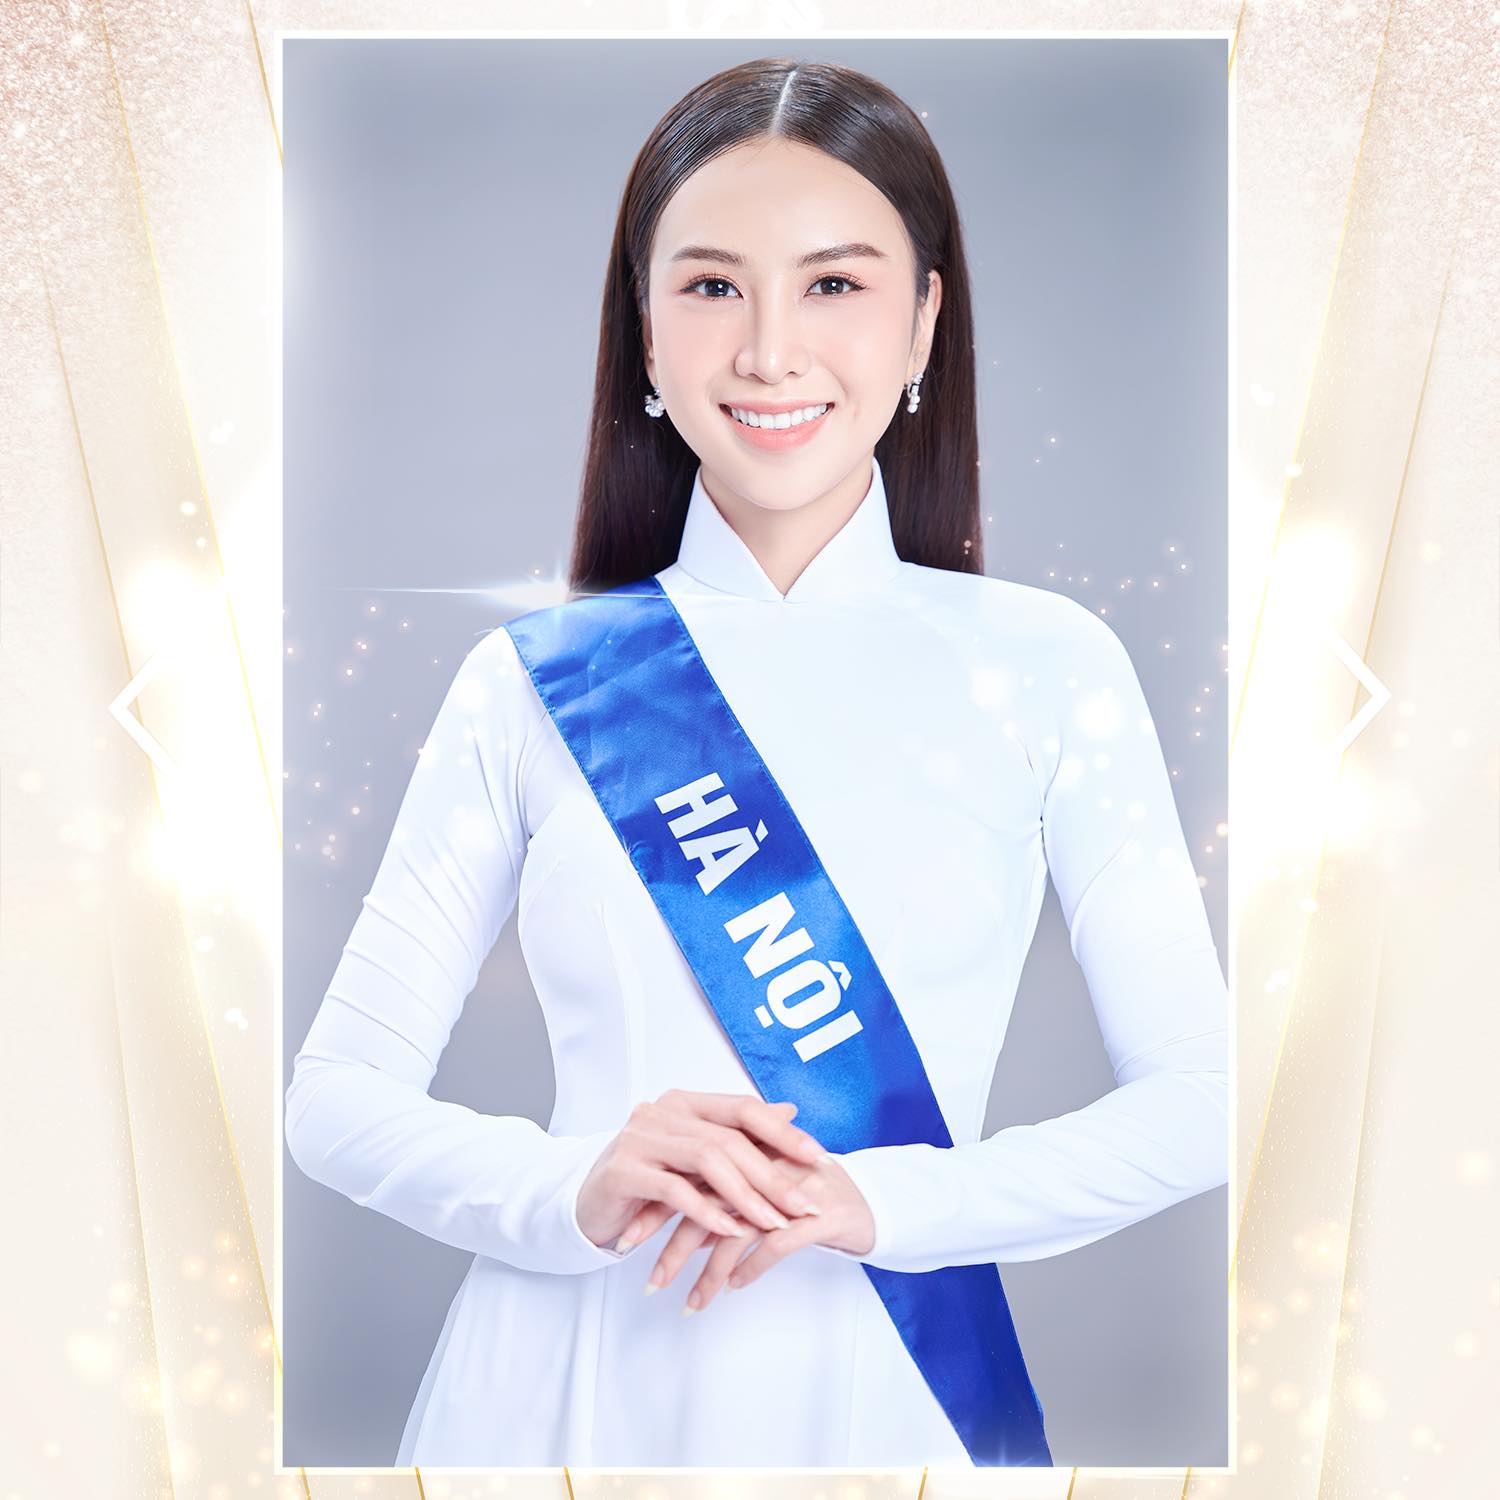 Nhan sắc xinh đẹp, lôi cuốn của con gái NSND Trần Nhượng khi lọt Top 10 xuất sắc tại Hoa hậu Du lịch - Ảnh 2.